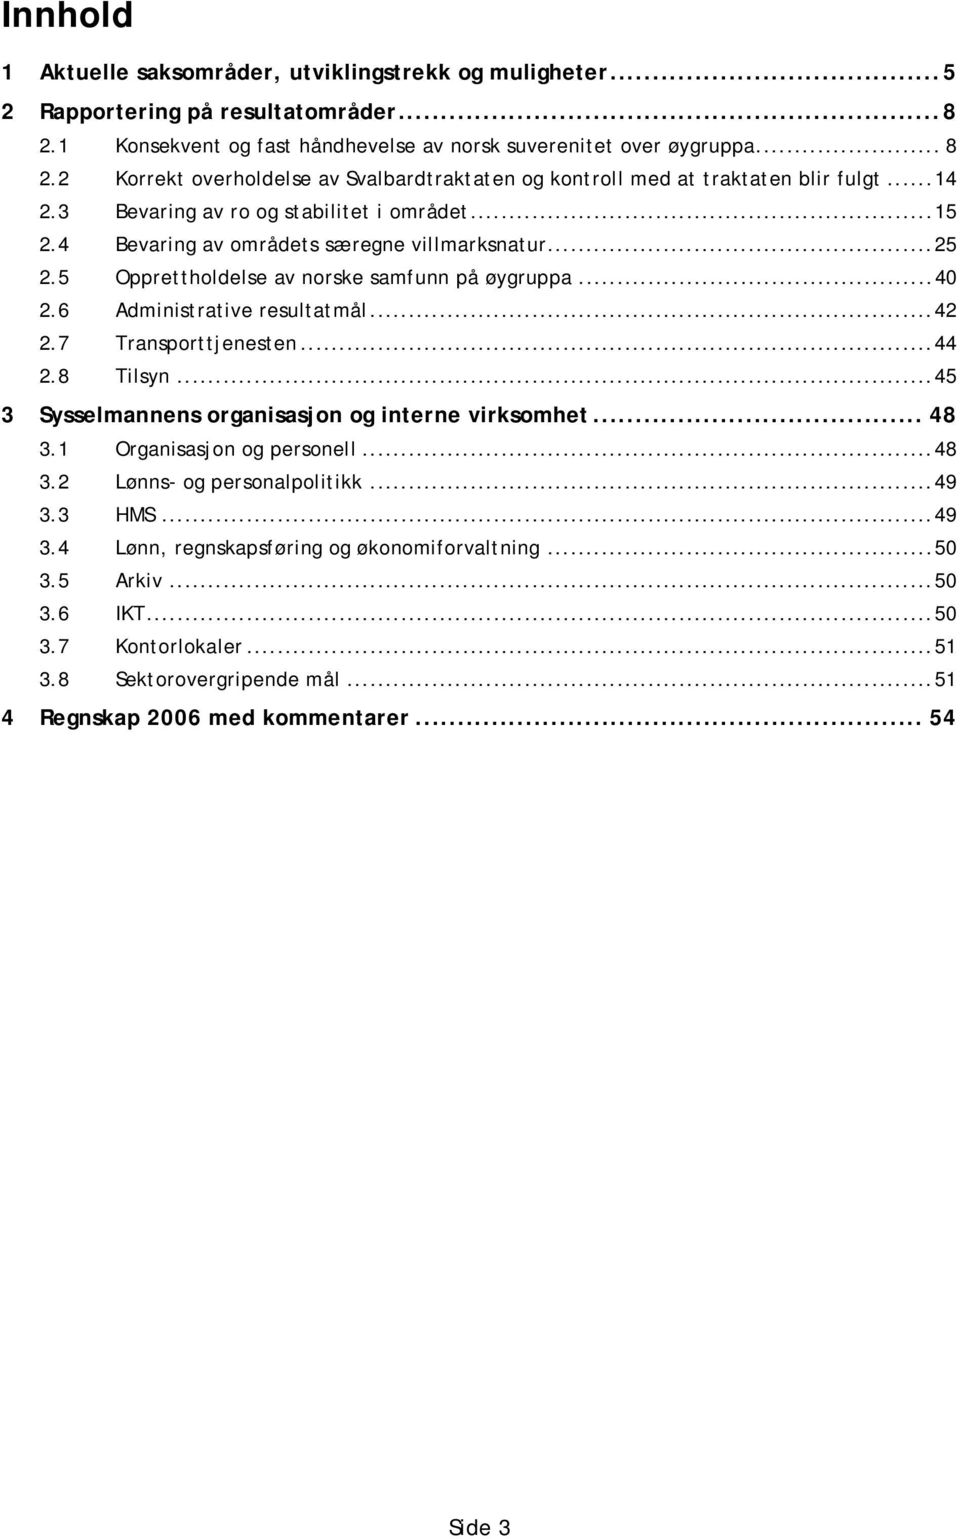 5 Opprettholdelse av norske samfunn på øygruppa...40 2.6 Administrative resultatmål...42 2.7 Transporttjenesten...44 2.8 Tilsyn...45 3 Sysselmannens organisasjon og interne virksomhet... 48 3.